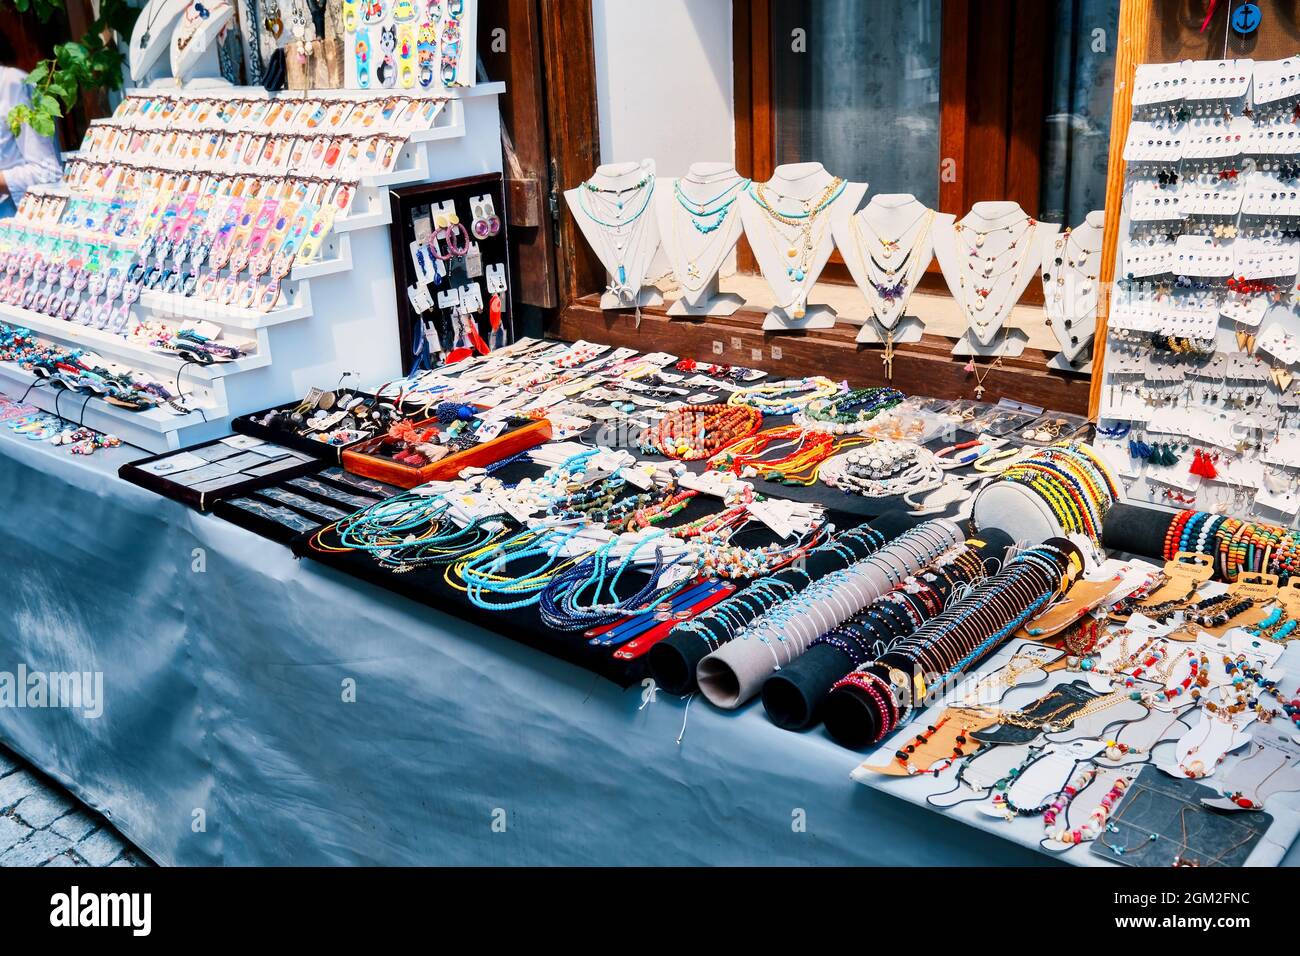 Giugno, 2021 - Seferihisar, Izmir, Turchia: Negozio di souvenir con uno stand all'aperto sulla strada con autentici bigiotteria fatti a mano e gioielli in vendita Foto Stock